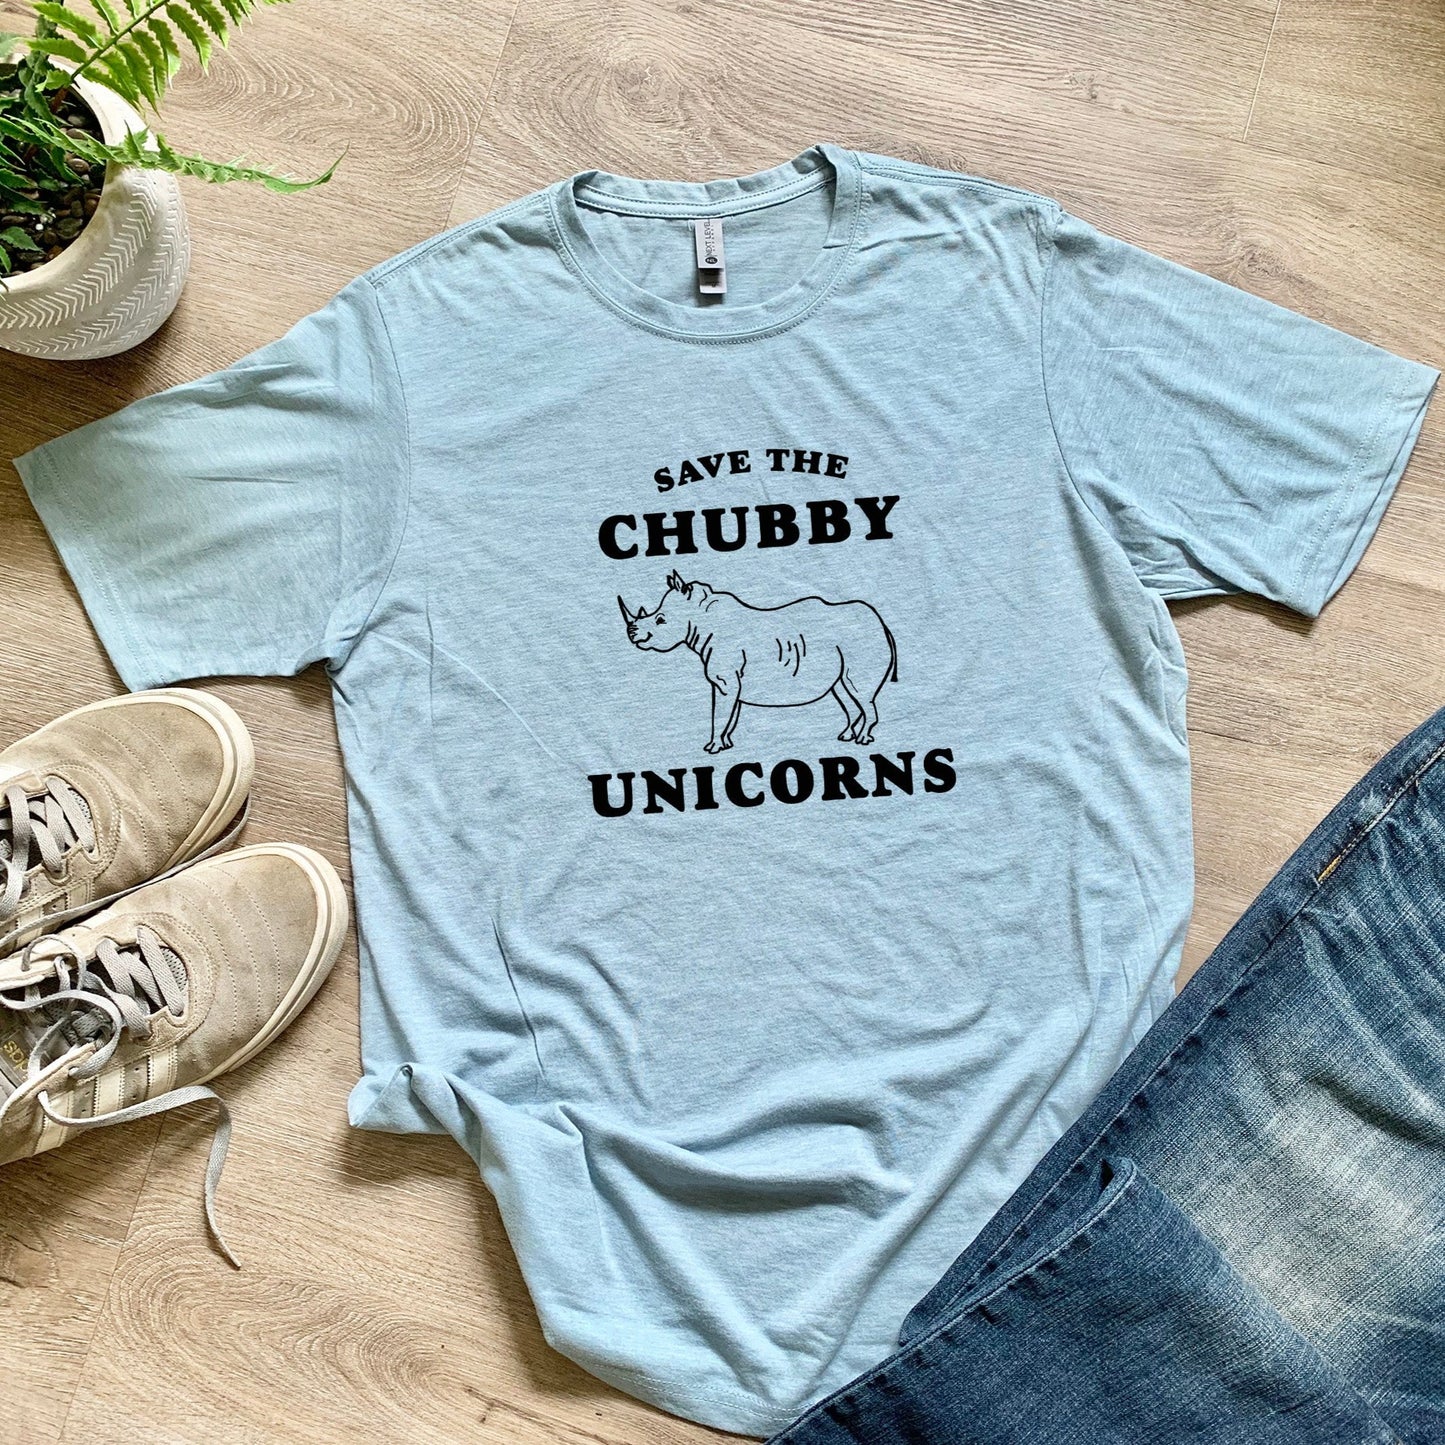 Save The Chubby Unicorns - Men's / Unisex Tee - Stonewash Blue or Sage